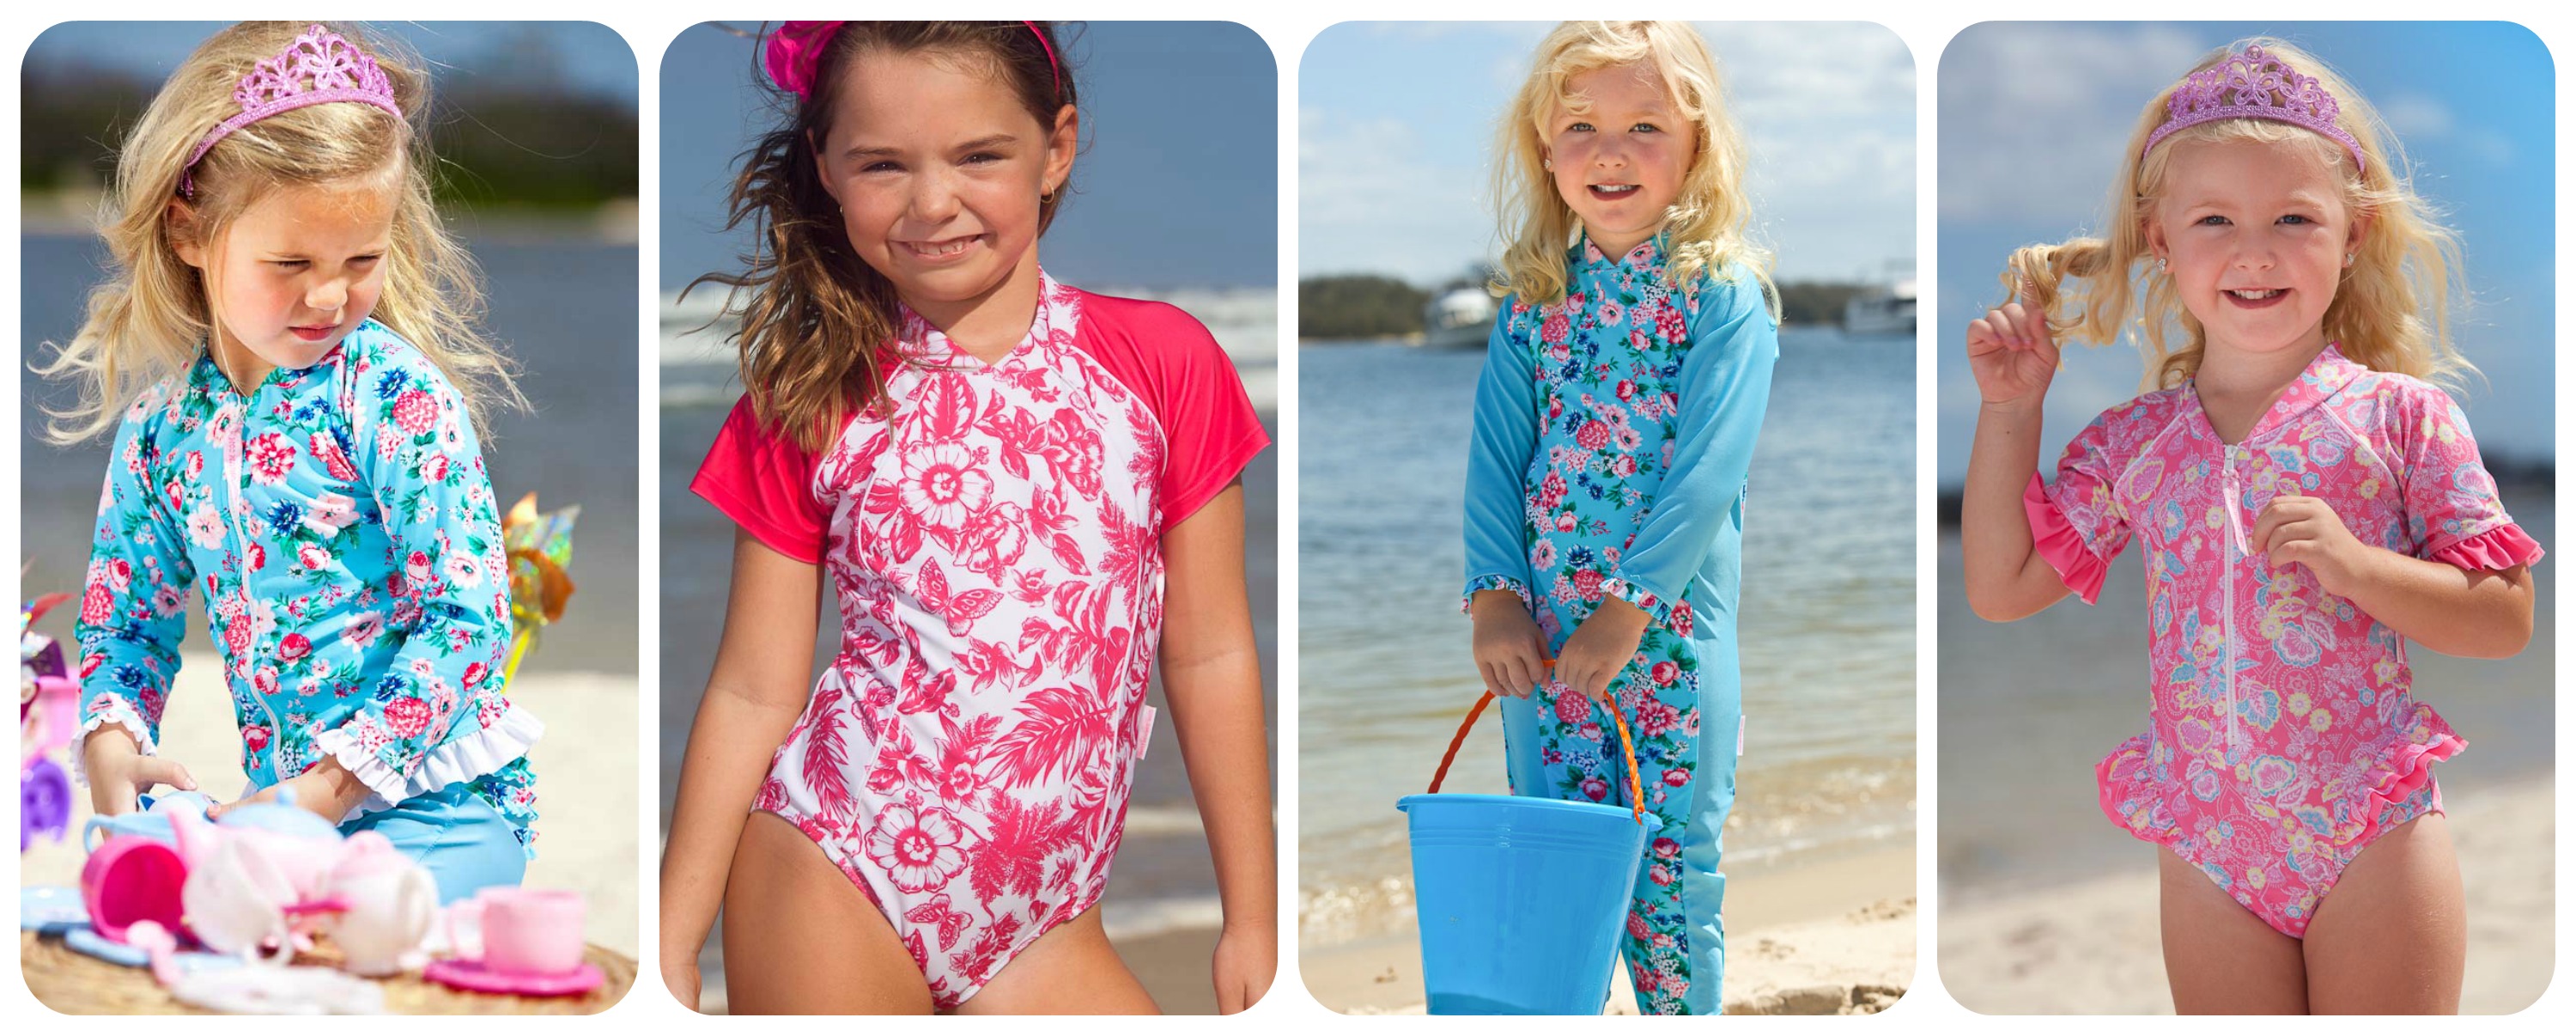 $100 Gift Voucher to Spend on Sun-Protection Swimwear at Kasana Sea ...